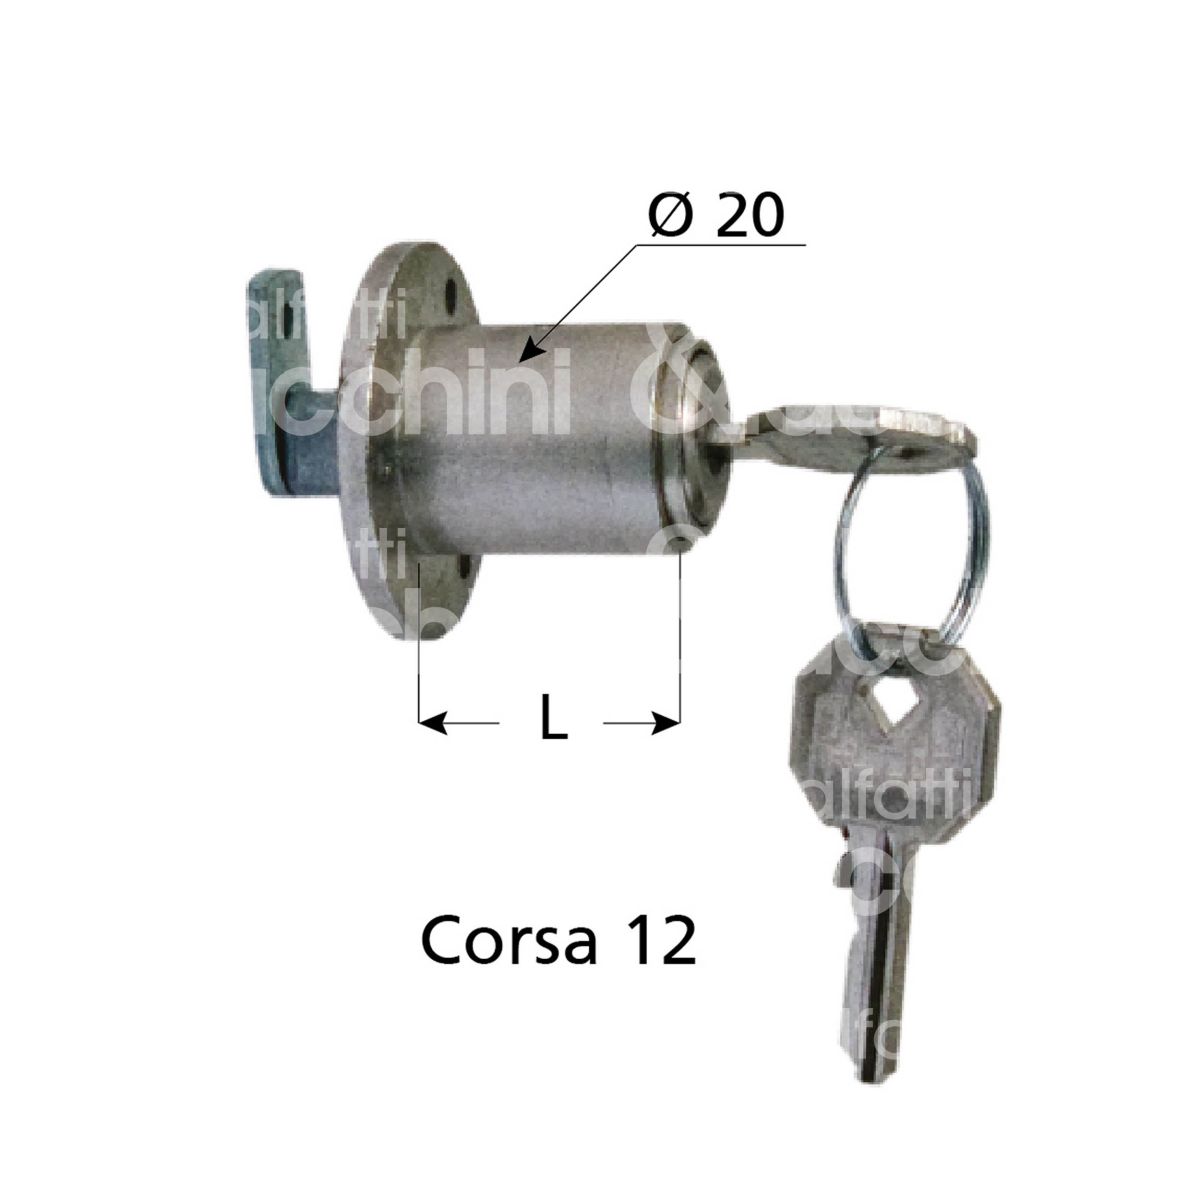 Prefer fs07 serratura per scorrevole a pulsante Ø 20 lunghezza mm 22  ambidestra chiave piatta kd rotazione 90° 2 estrazione nichelato  MALFATTI&TACCHINI GROUP